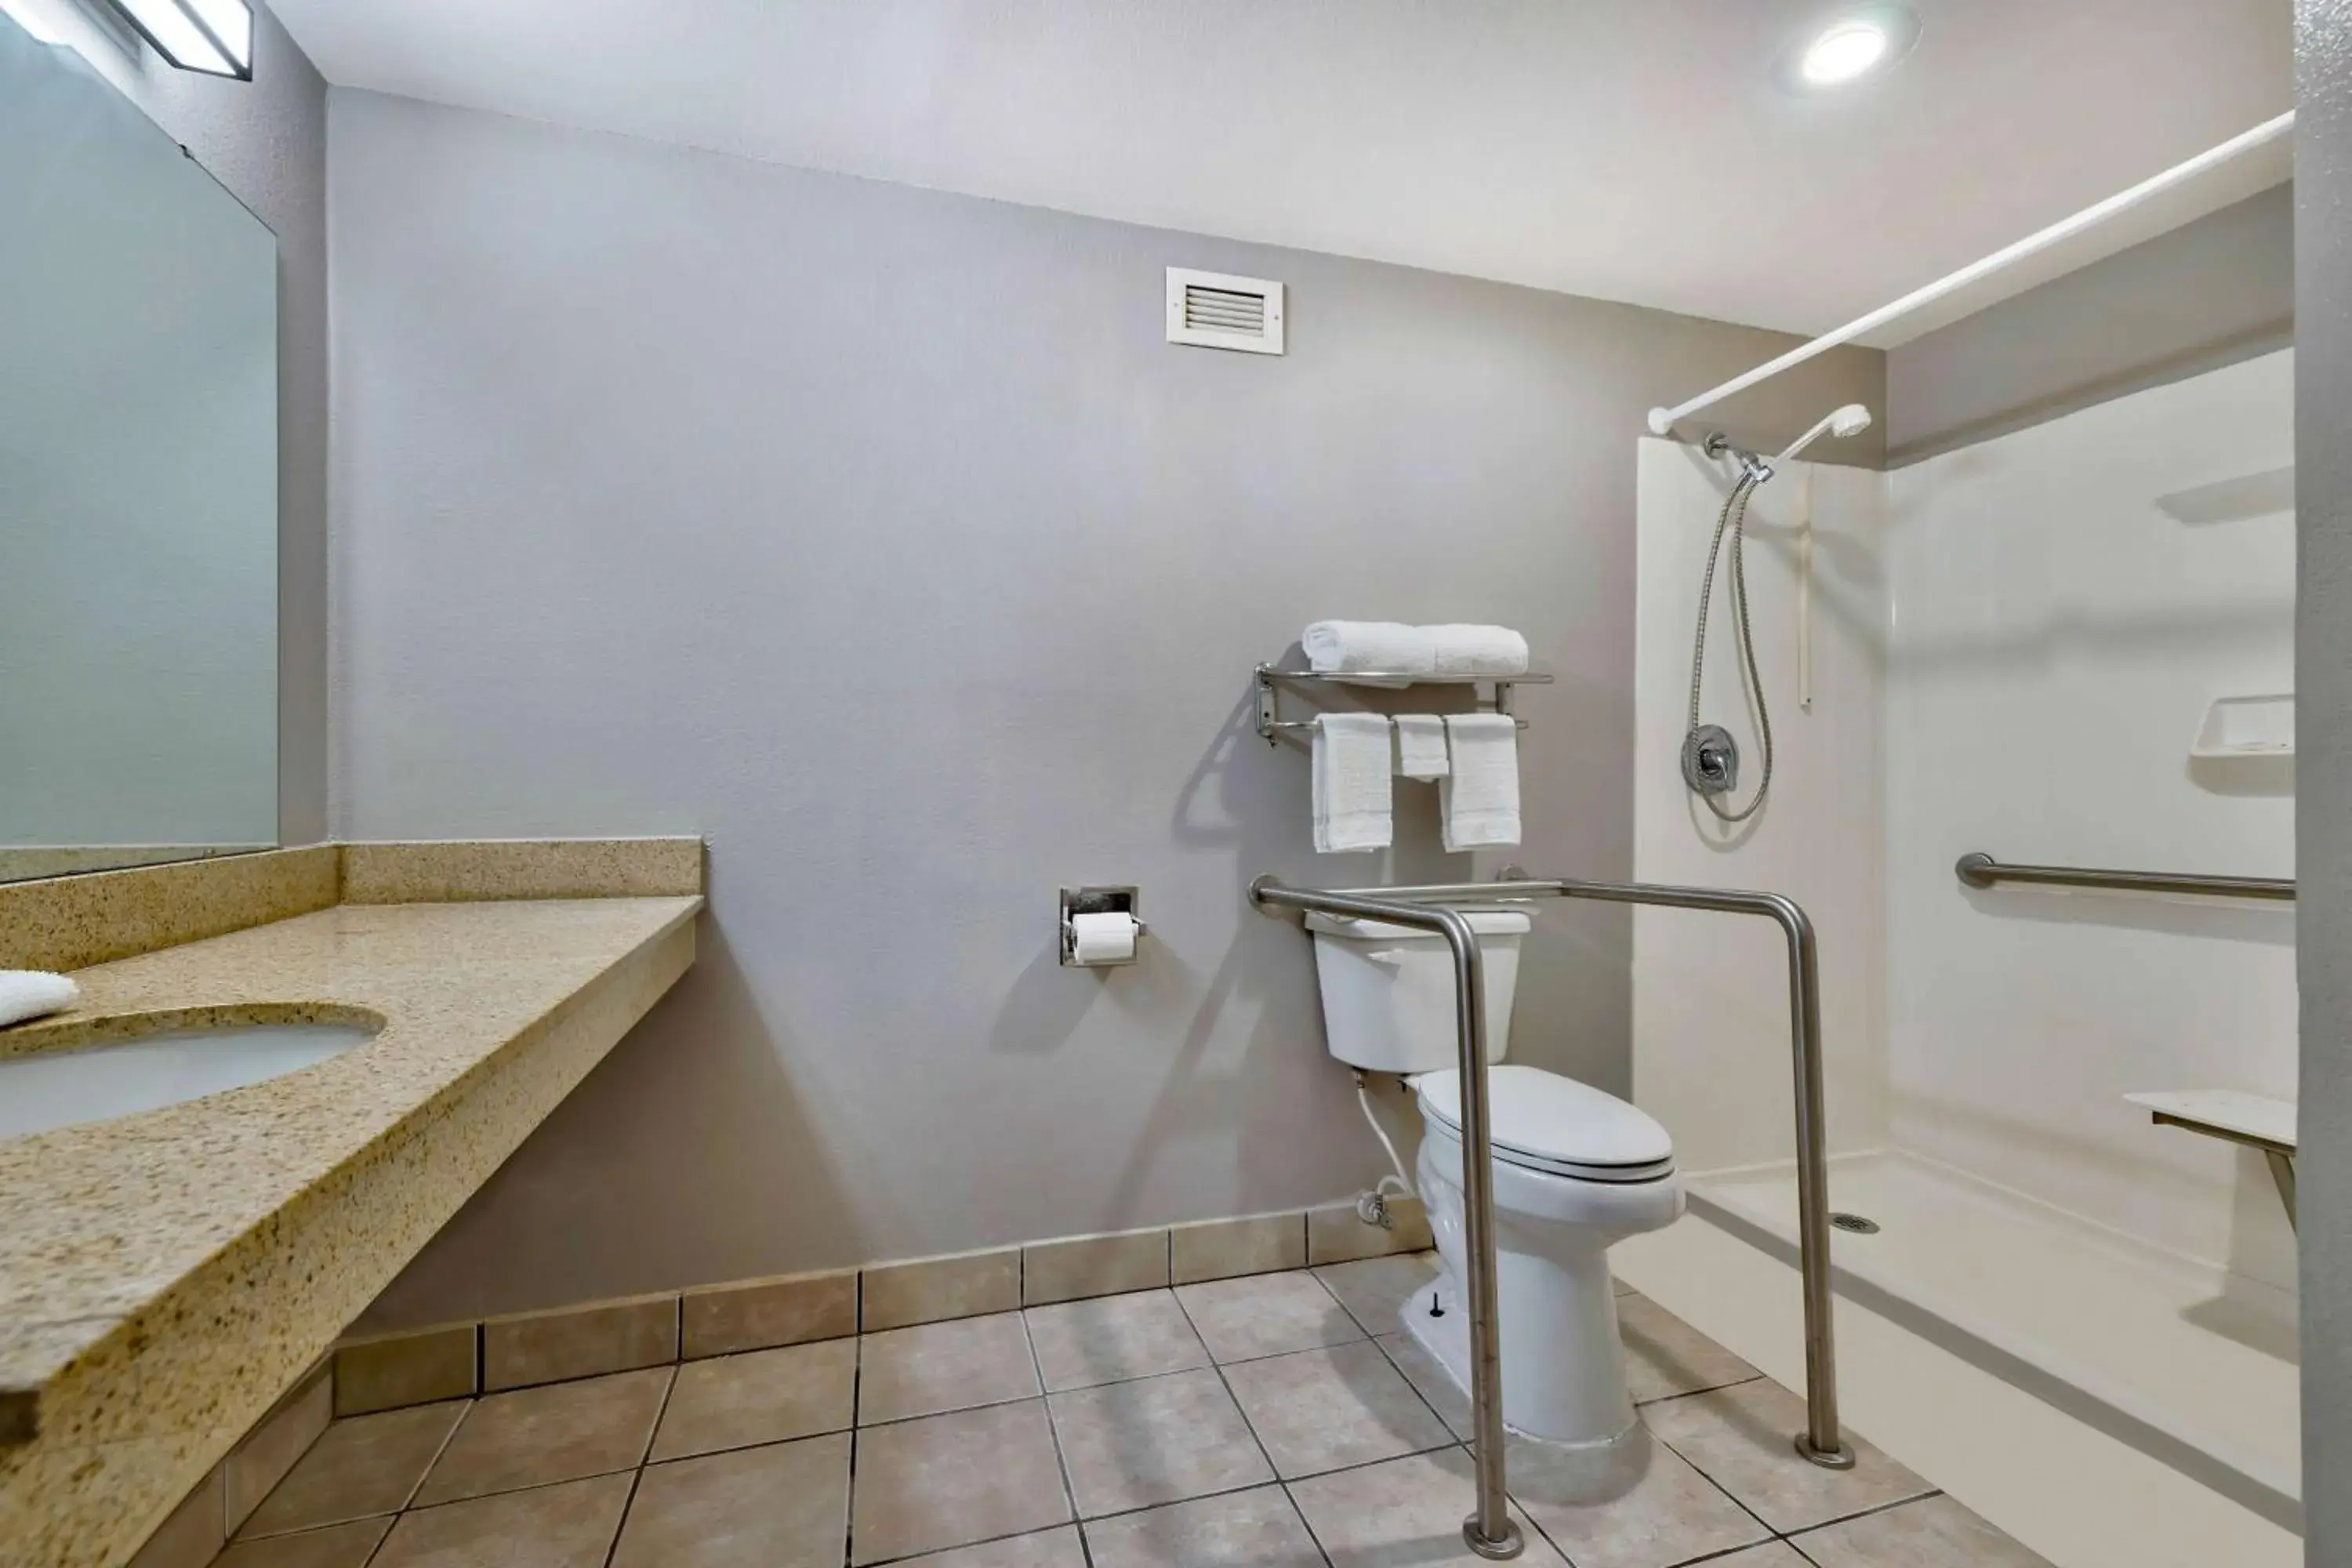 Bathroom in Motel 6 - Bartlesville, OK